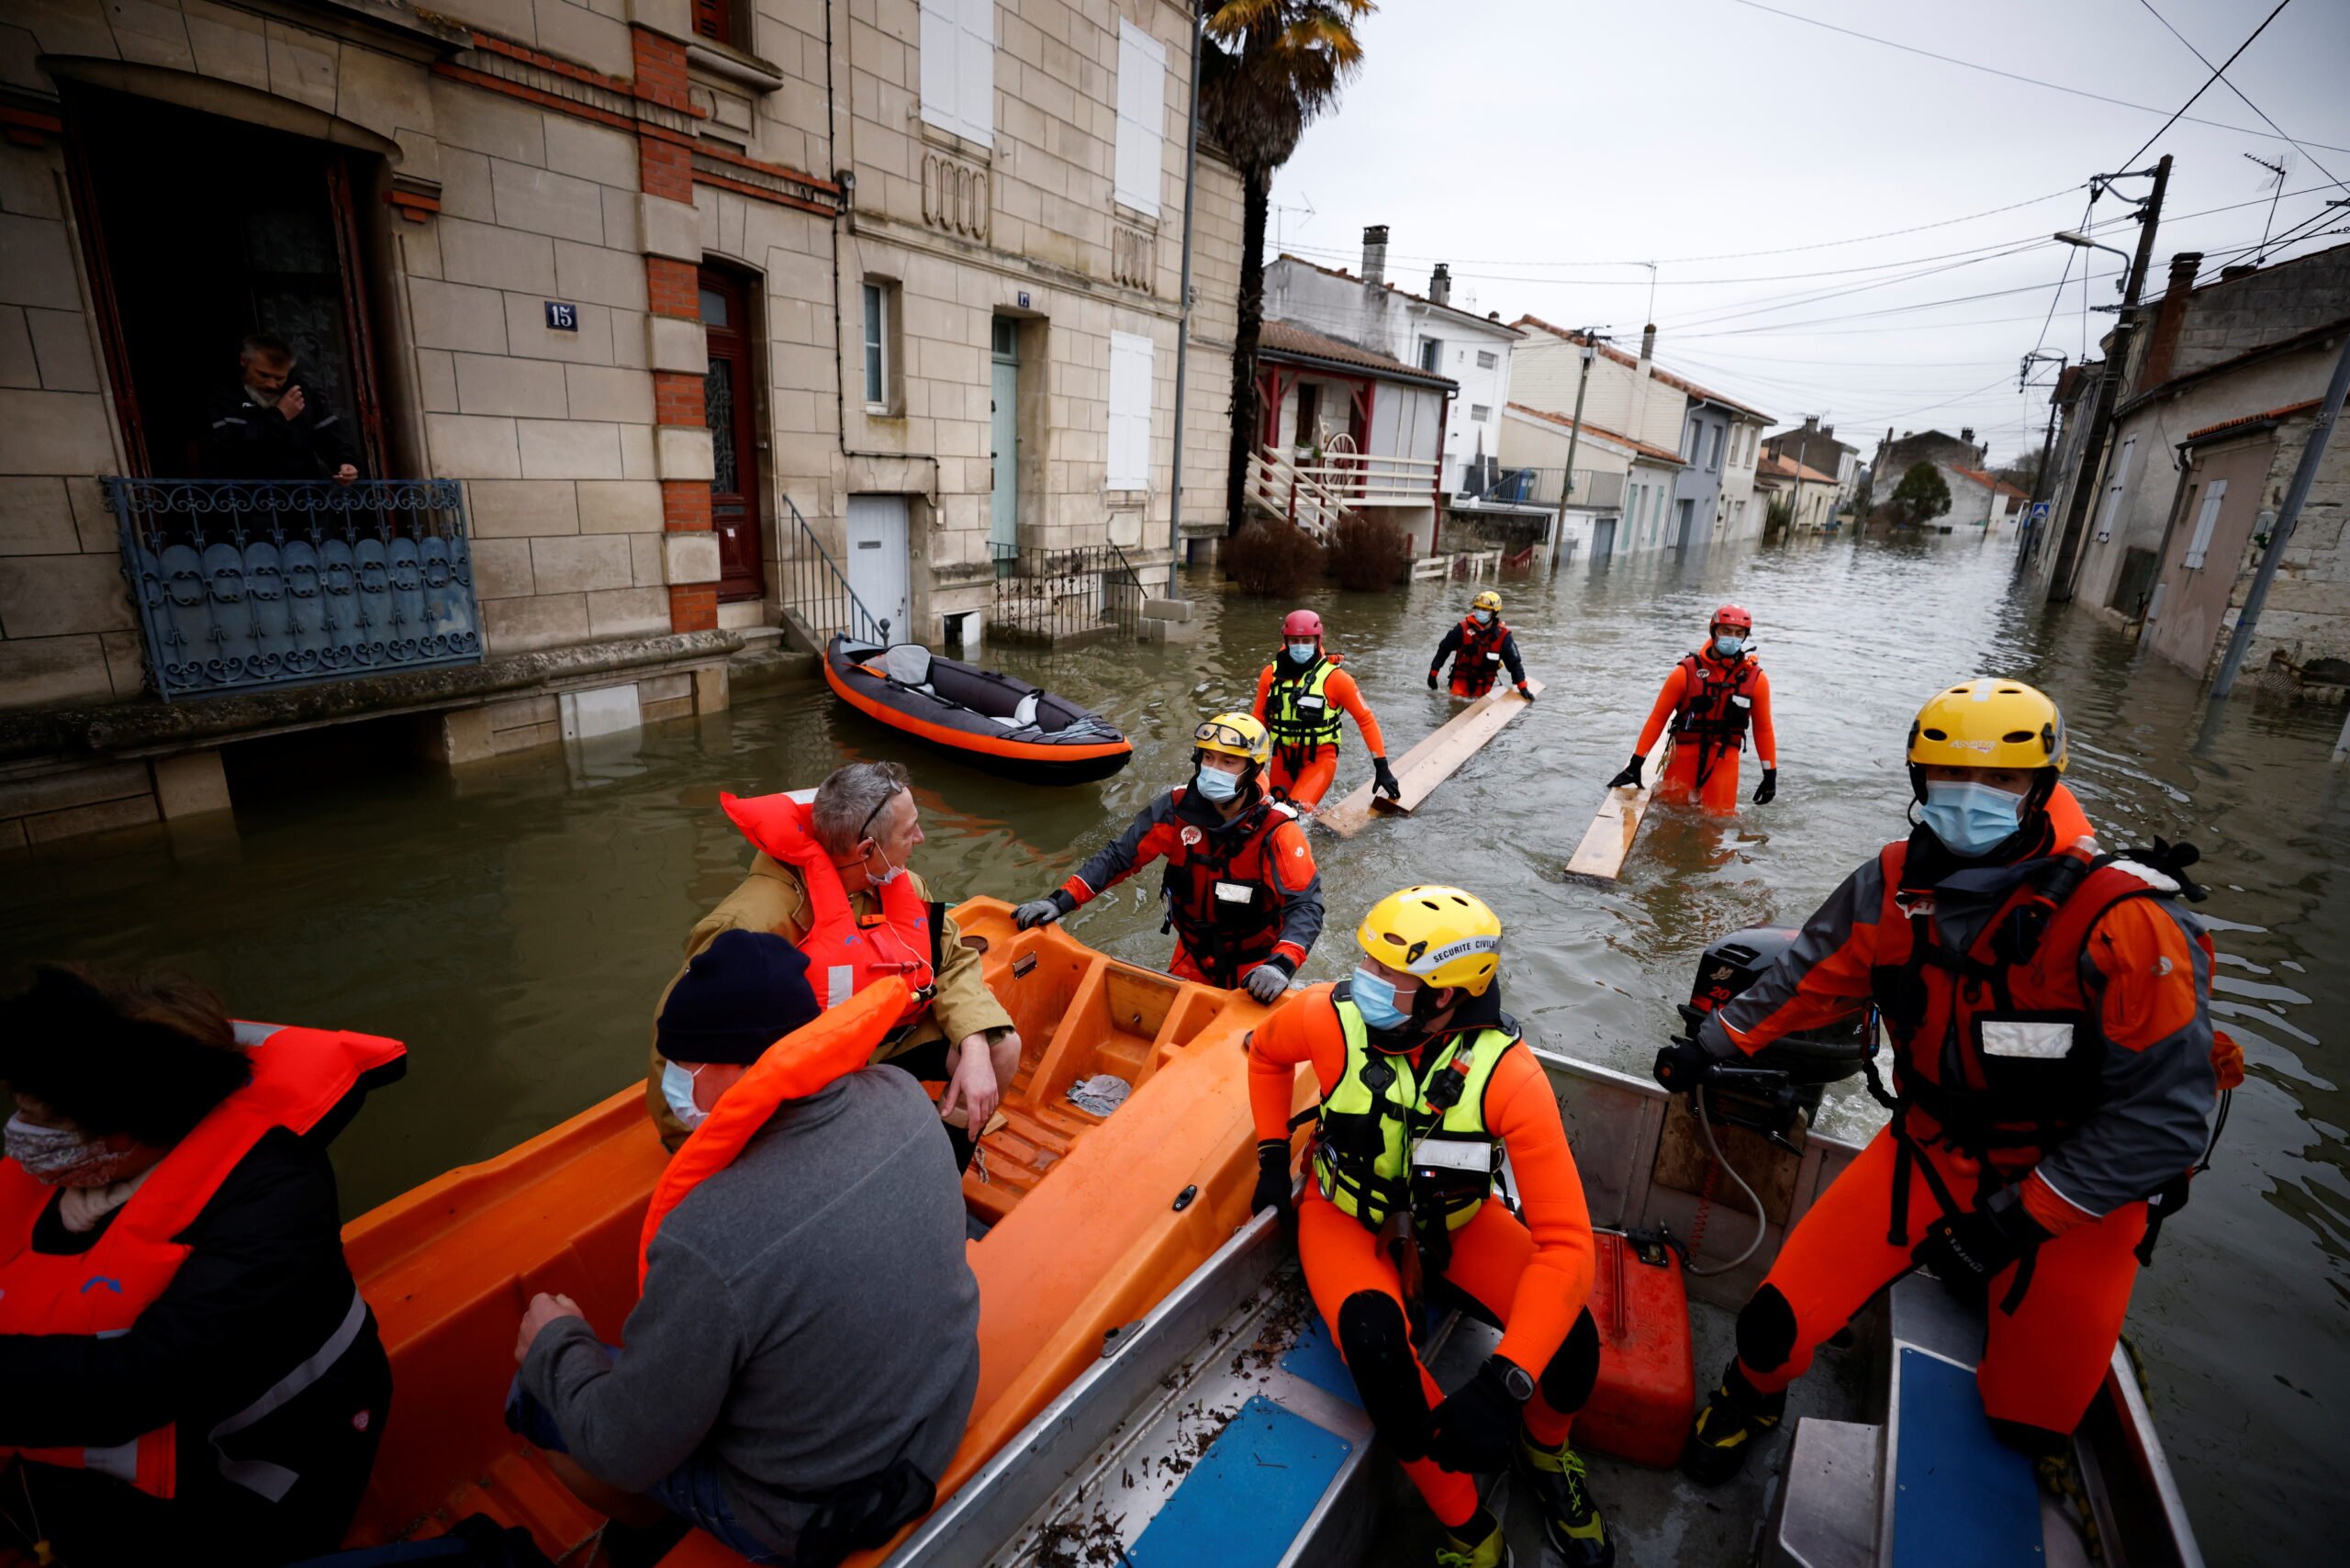 Η νοτιοδυτική Γαλλία επλήγη από βαριές πλημμύρες, η περιοχή του Παρισιού σε επιφυλακή πλημμυρών